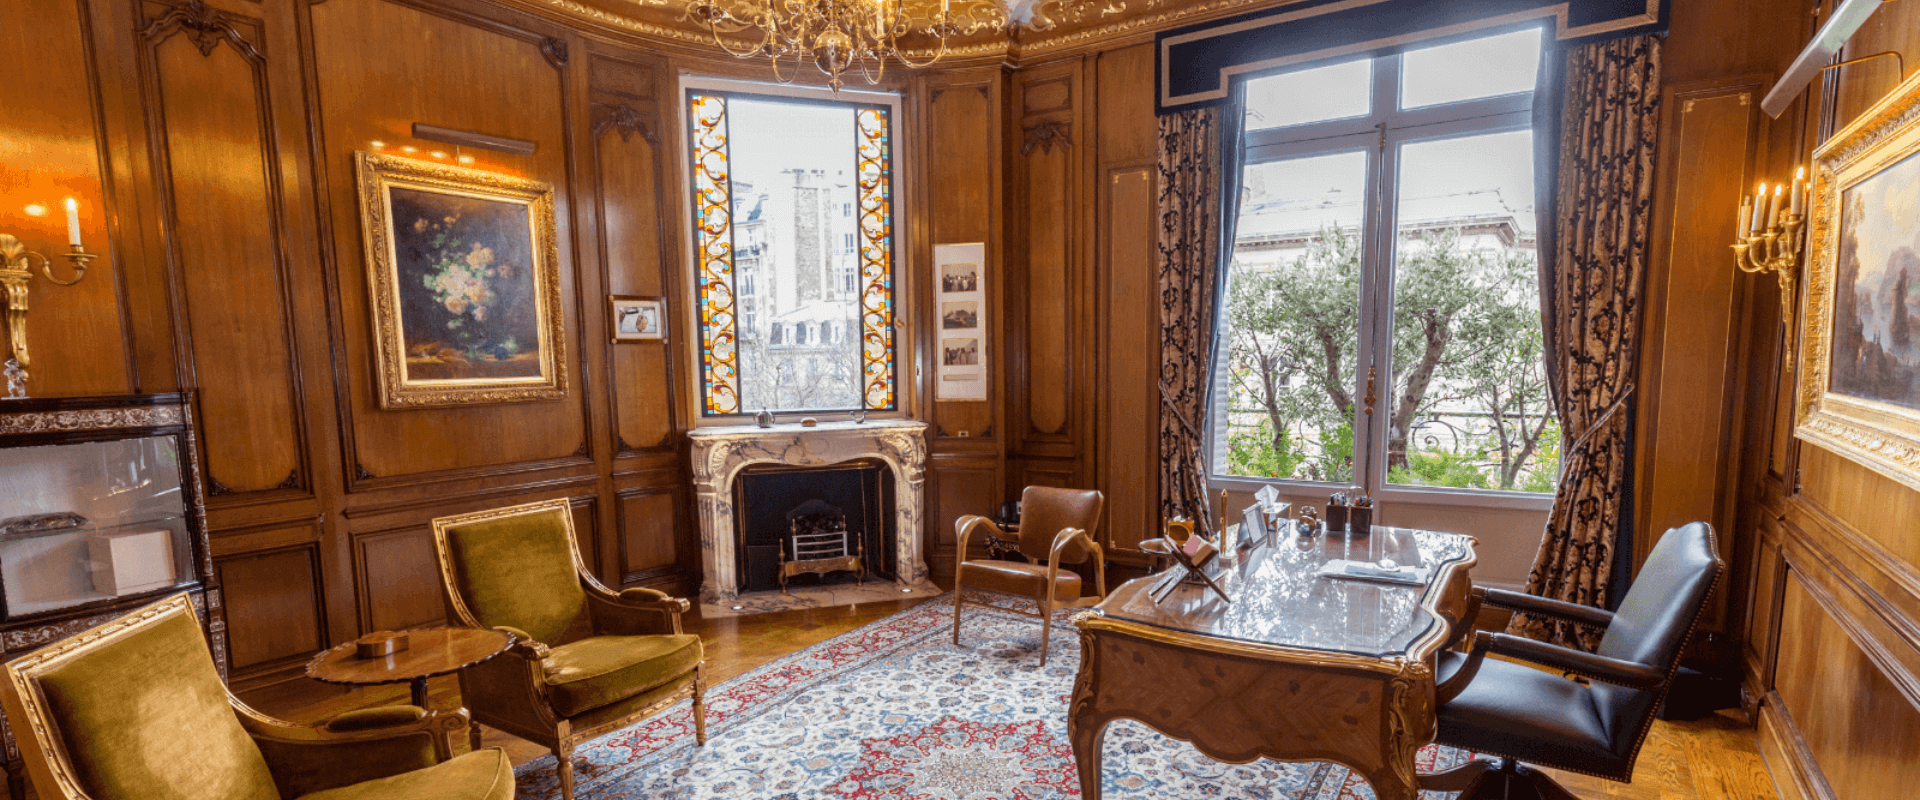 Luxurious interior design, Paris